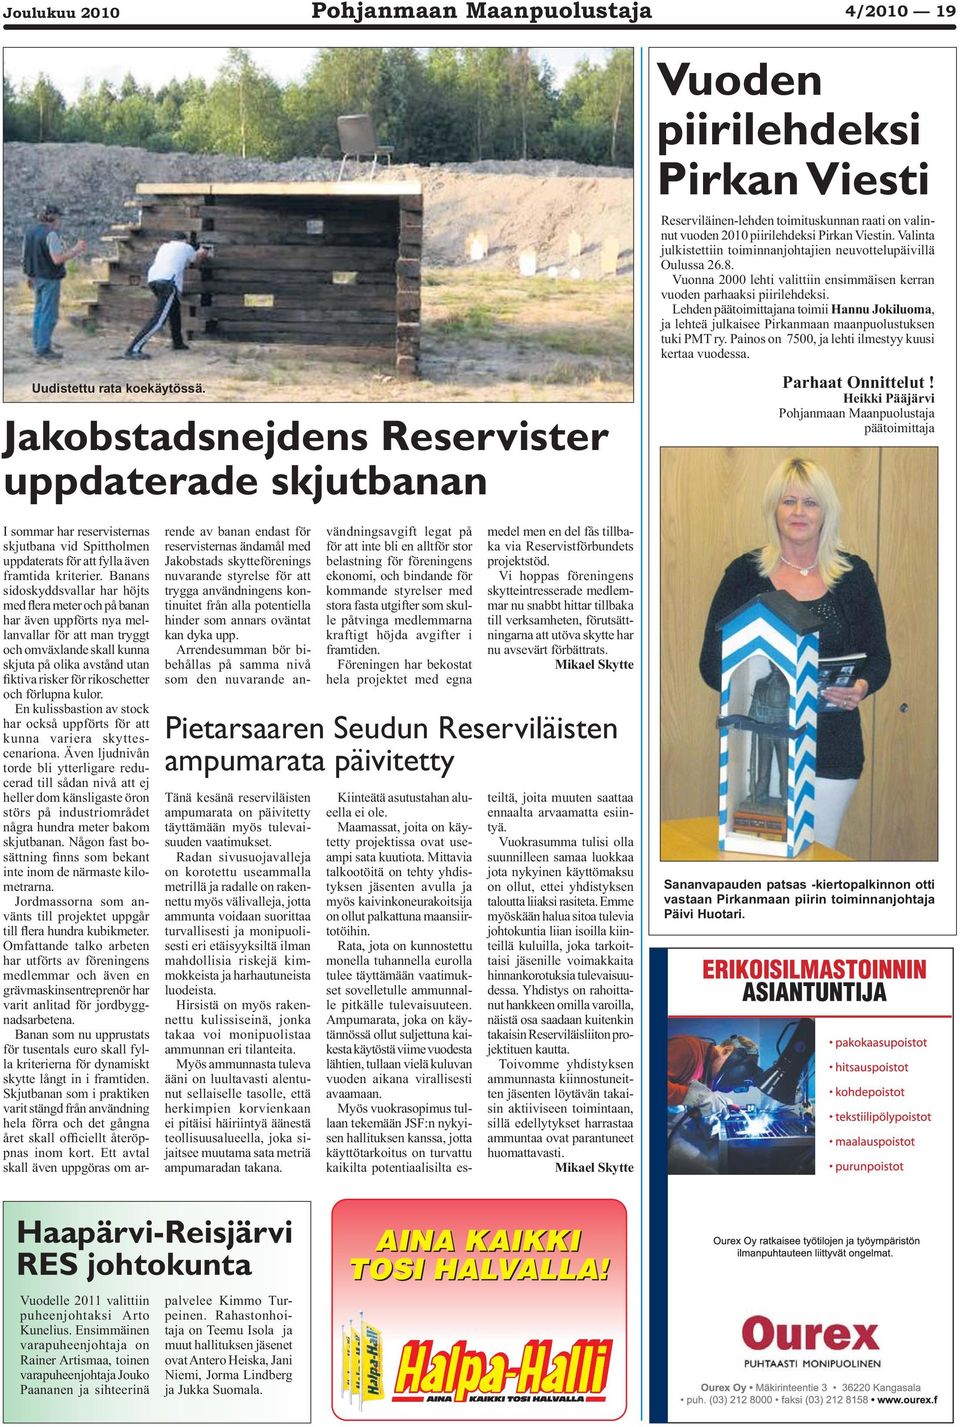 Valinta julkistettiin toiminnanjohtajien neuvottelupäivillä Oulussa 26.8. Vuonna 2000 lehti valittiin ensimmäisen kerran vuoden parhaaksi piirilehdeksi.